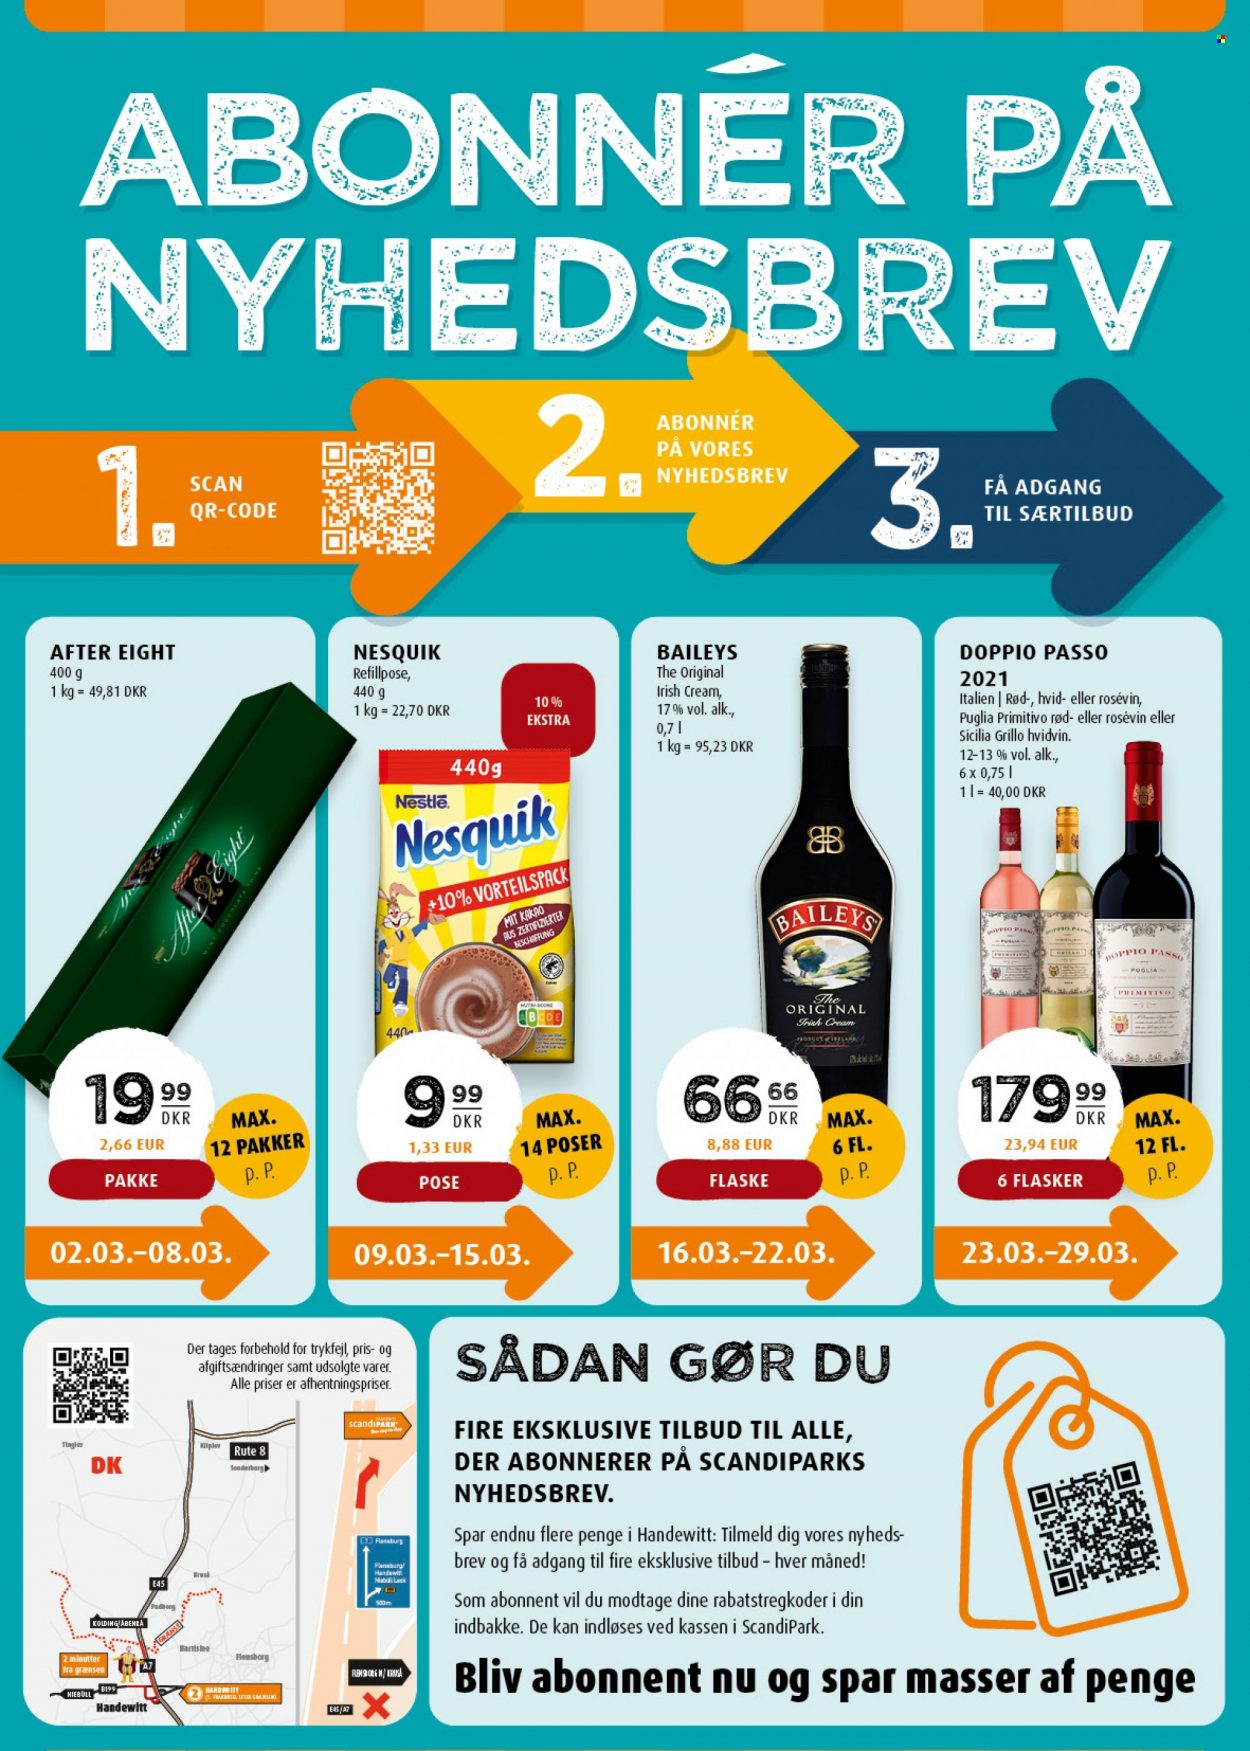 thumbnail - Scandinavian Park tilbud  - 2.3.2023 - 29.3.2023 - tilbudsprodukter - Nestlé, After Eight, Bailey's, hvidvin, vin. Side 36.